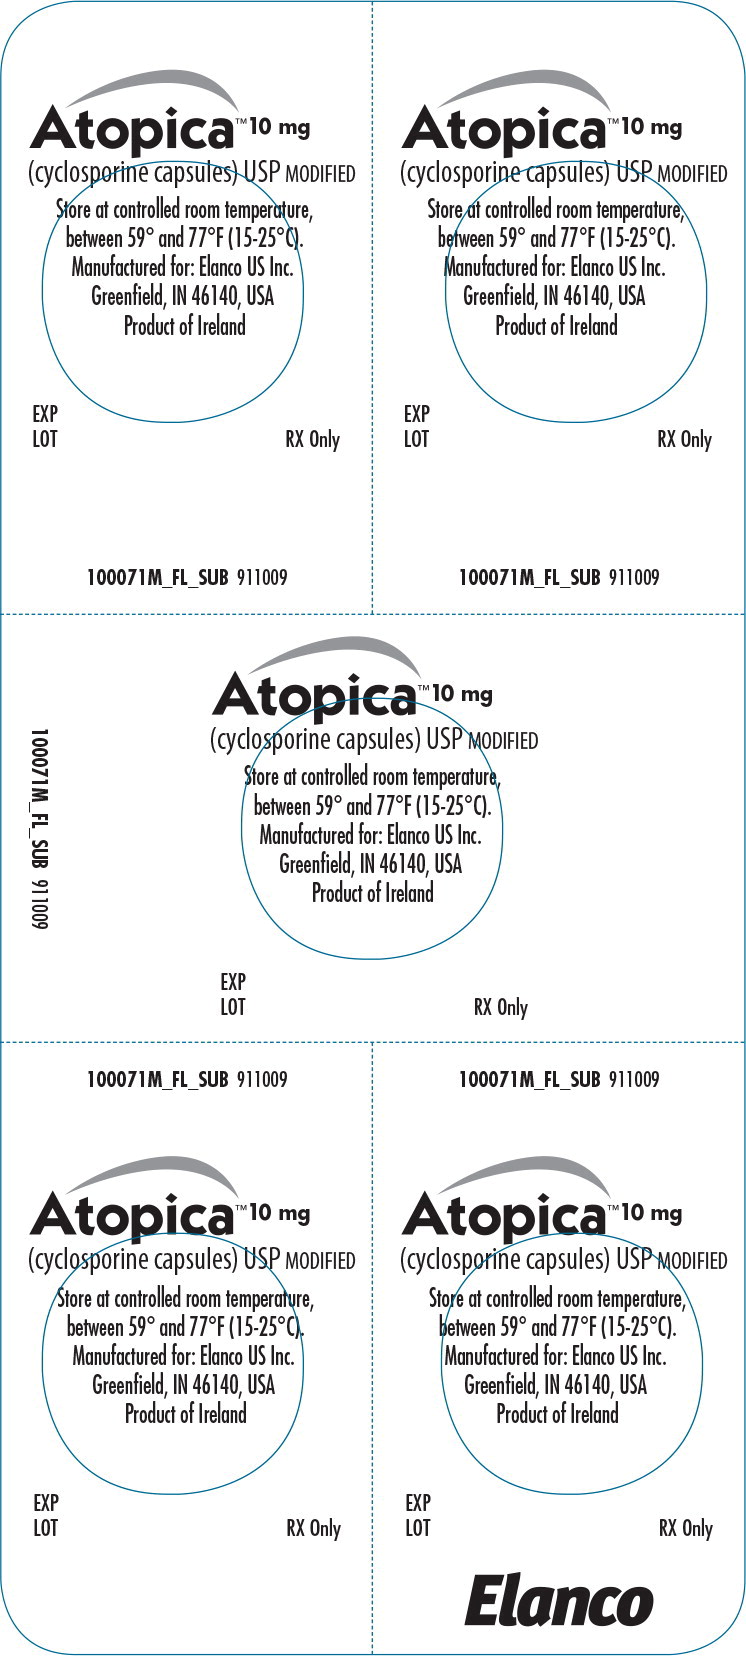 Principal Display Panel - Atopica 10mg Blister Label - ato02 0002 03